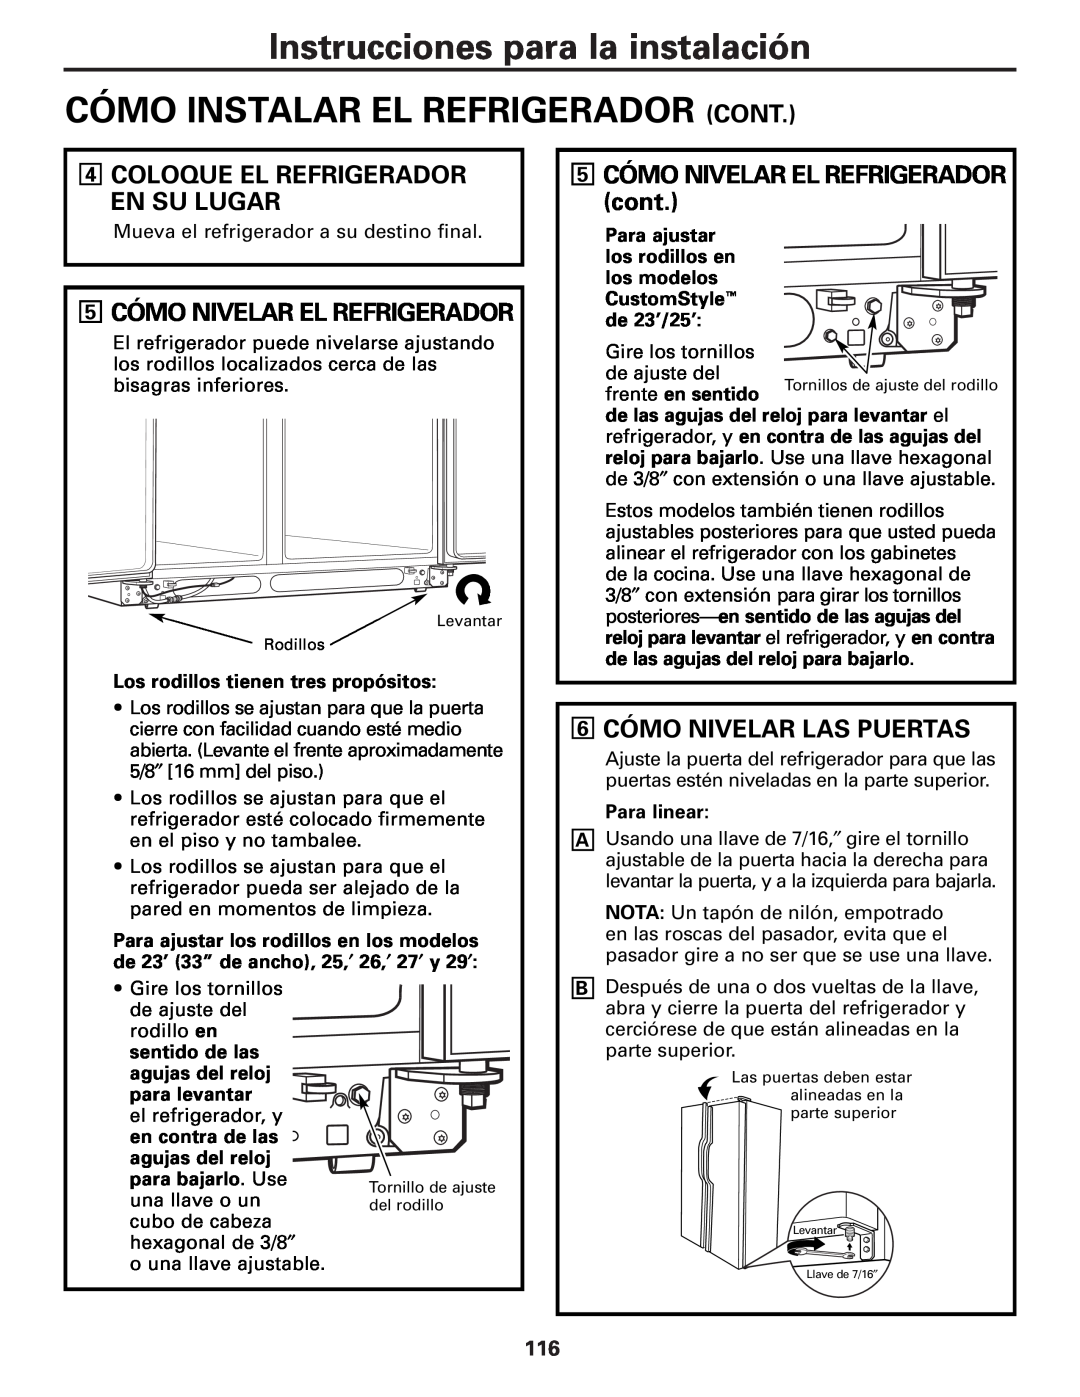 GE 49-60456 manual Cómo Instalar El Refrigerador Cont, 5 CÓMO NIVELAR EL REFRIGERADOR cont, 6 CÓMO NIVELAR LAS PUERTAS 